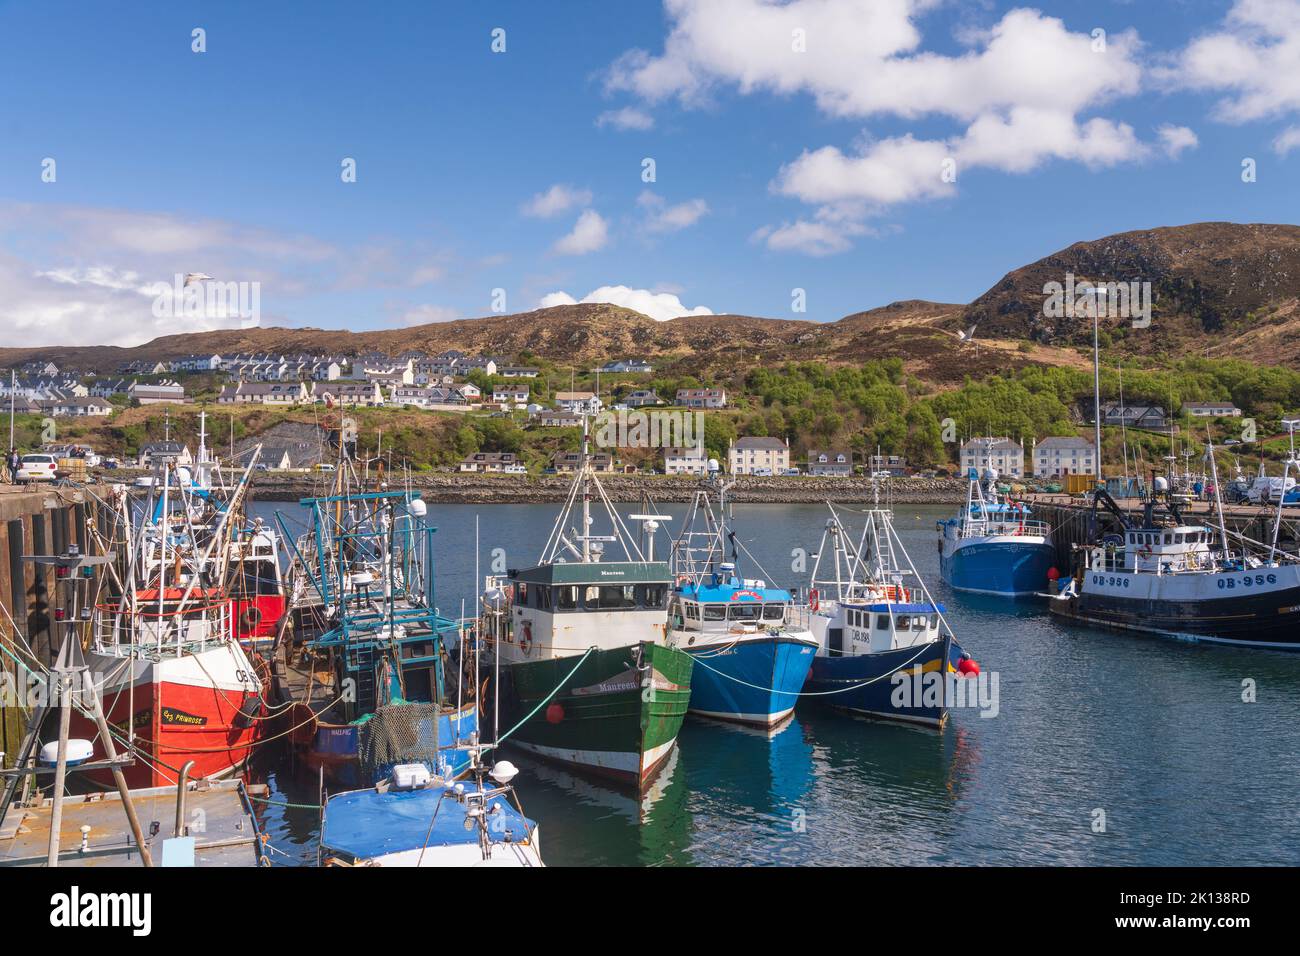 Angeln und Vergnügungsboote, die im Hafen von Mallaig, Highlands, Schottland, Vereinigtes Königreich, Europa festgemacht sind Stockfoto